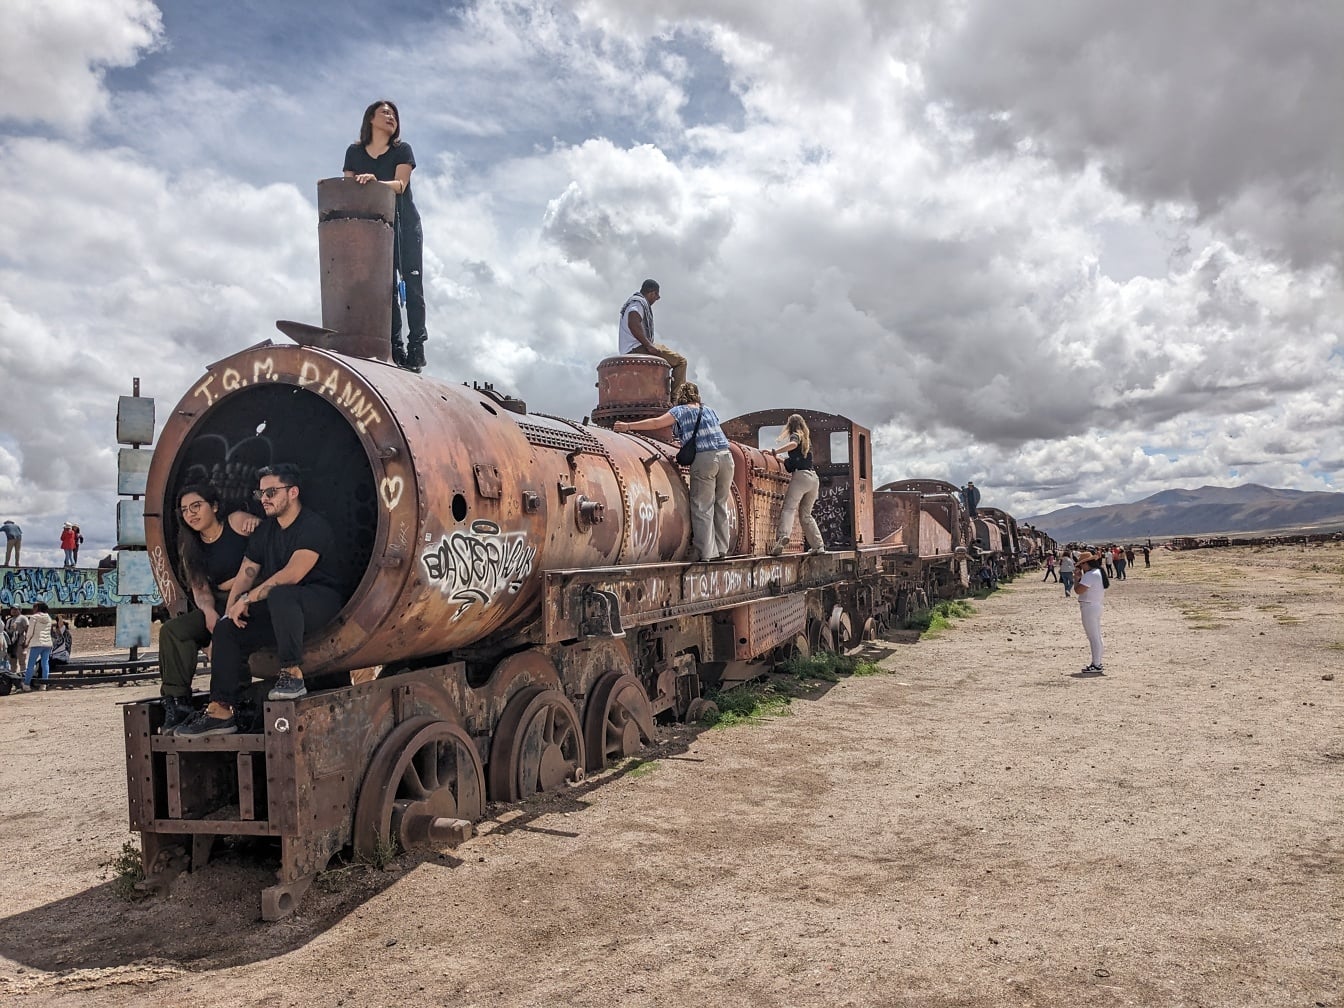 Turisti u zahrđalom vlaku napuštenom u pustinji na mjestu poznatom kao željezničko groblje